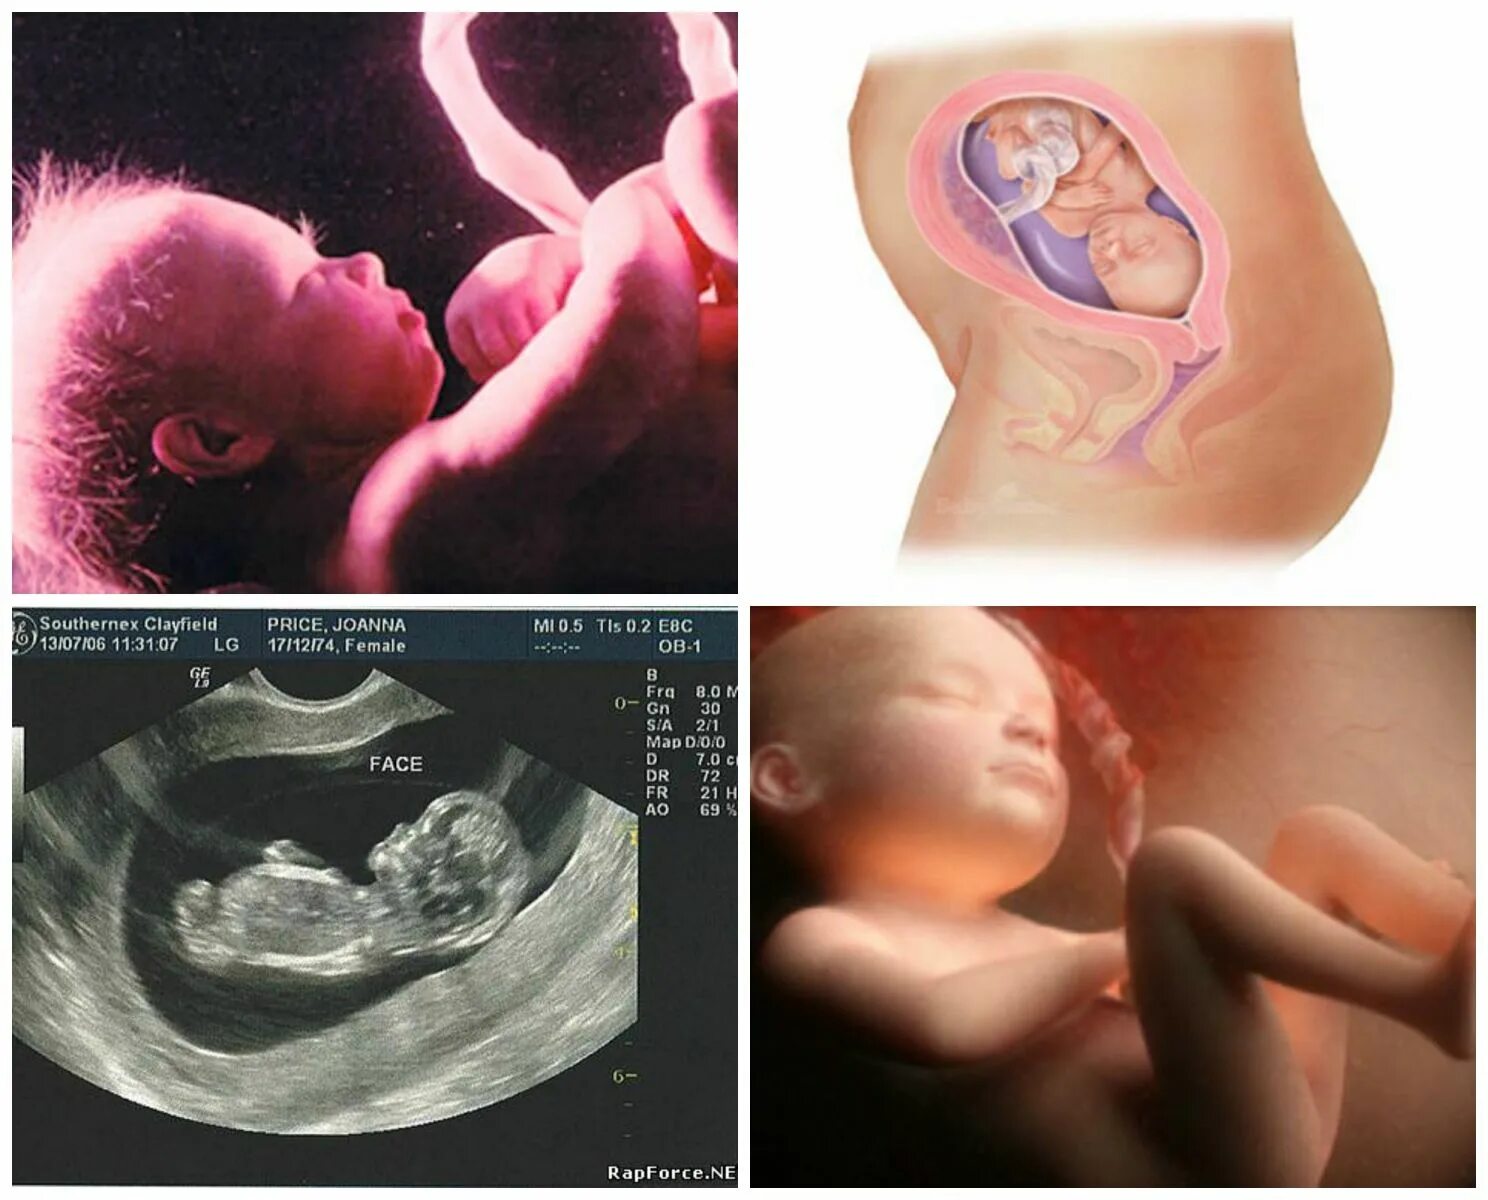 26 недель беременности что происходит с малышом. 27 Неделя беременности фото плода. Ребенок на 26 неделе беременности УЗИ. 26 Неделя беременности фото плода. Беременность 26-27 недель фото плода.